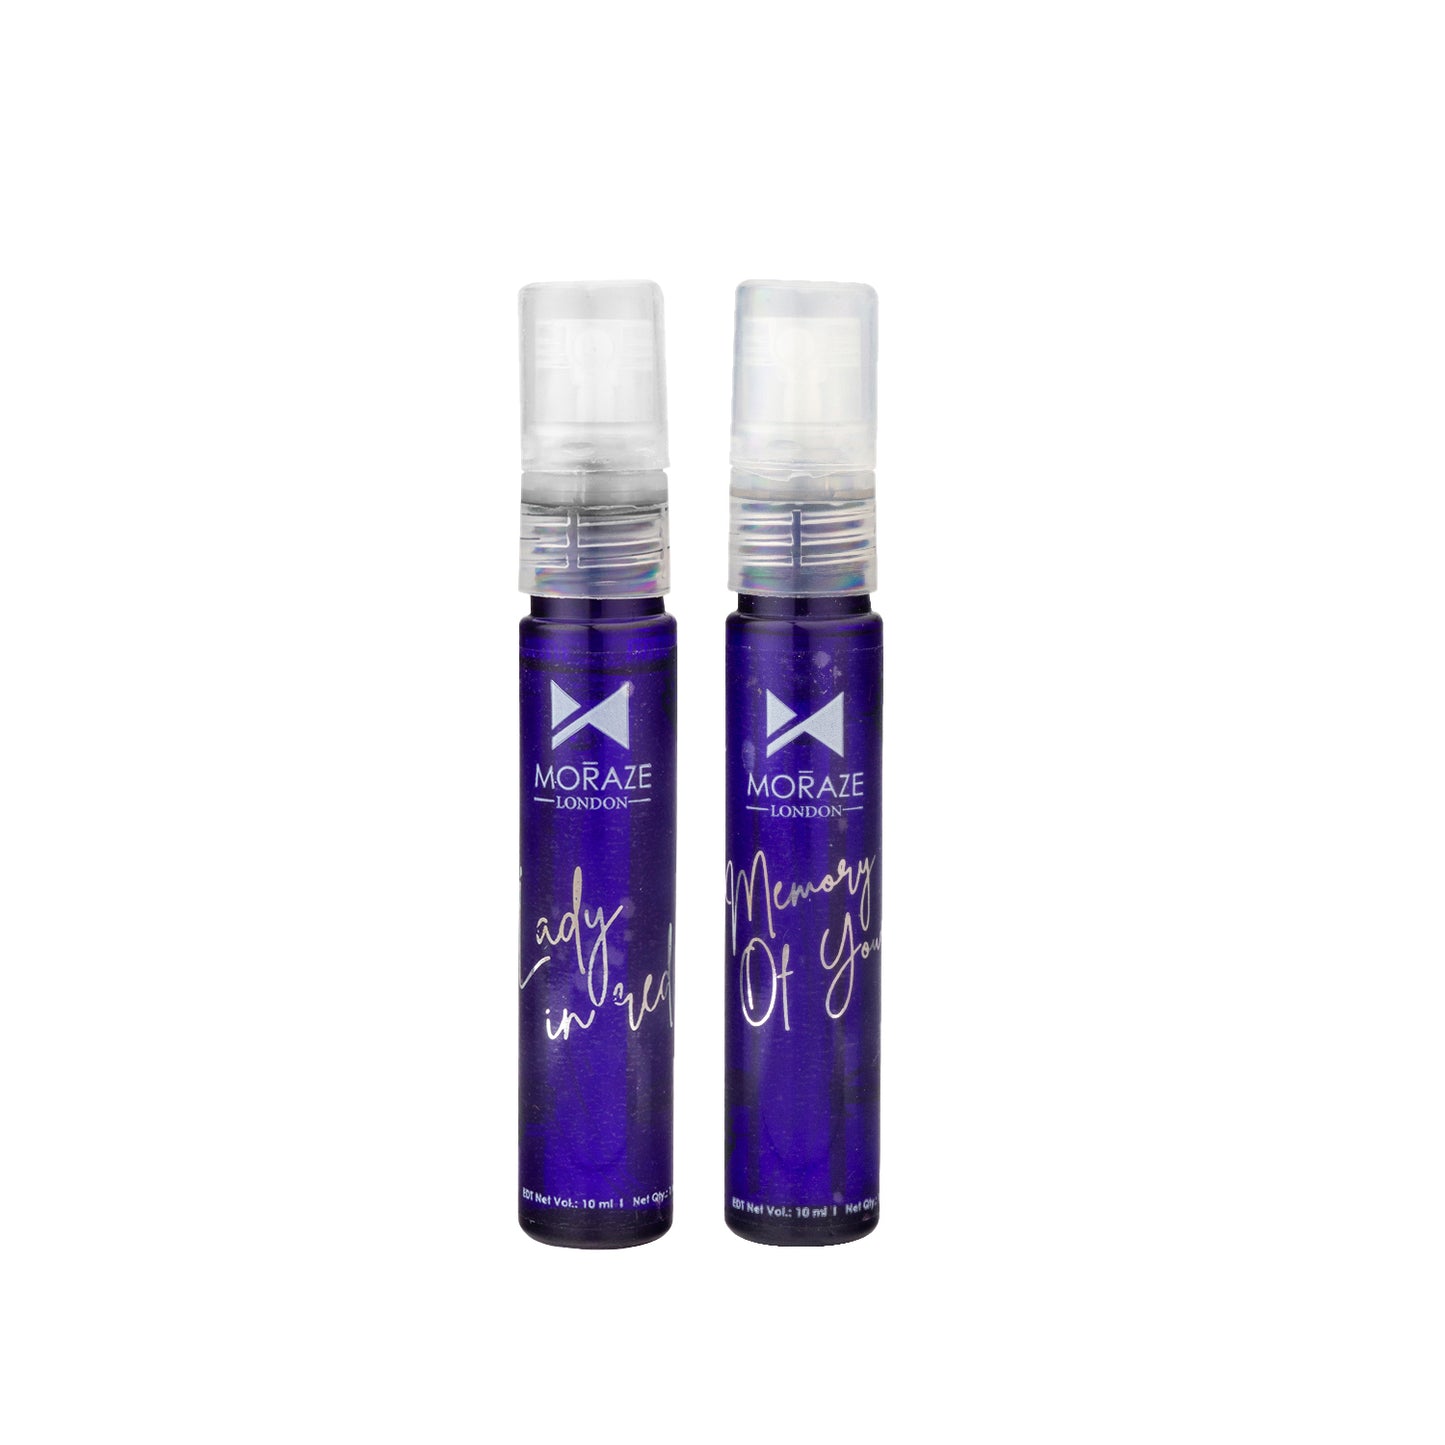 Moraze London Long Lasting & Refreshing Mini Pocket Perfume Pack of 2 - 10 ml Perfume Set For Men & Women